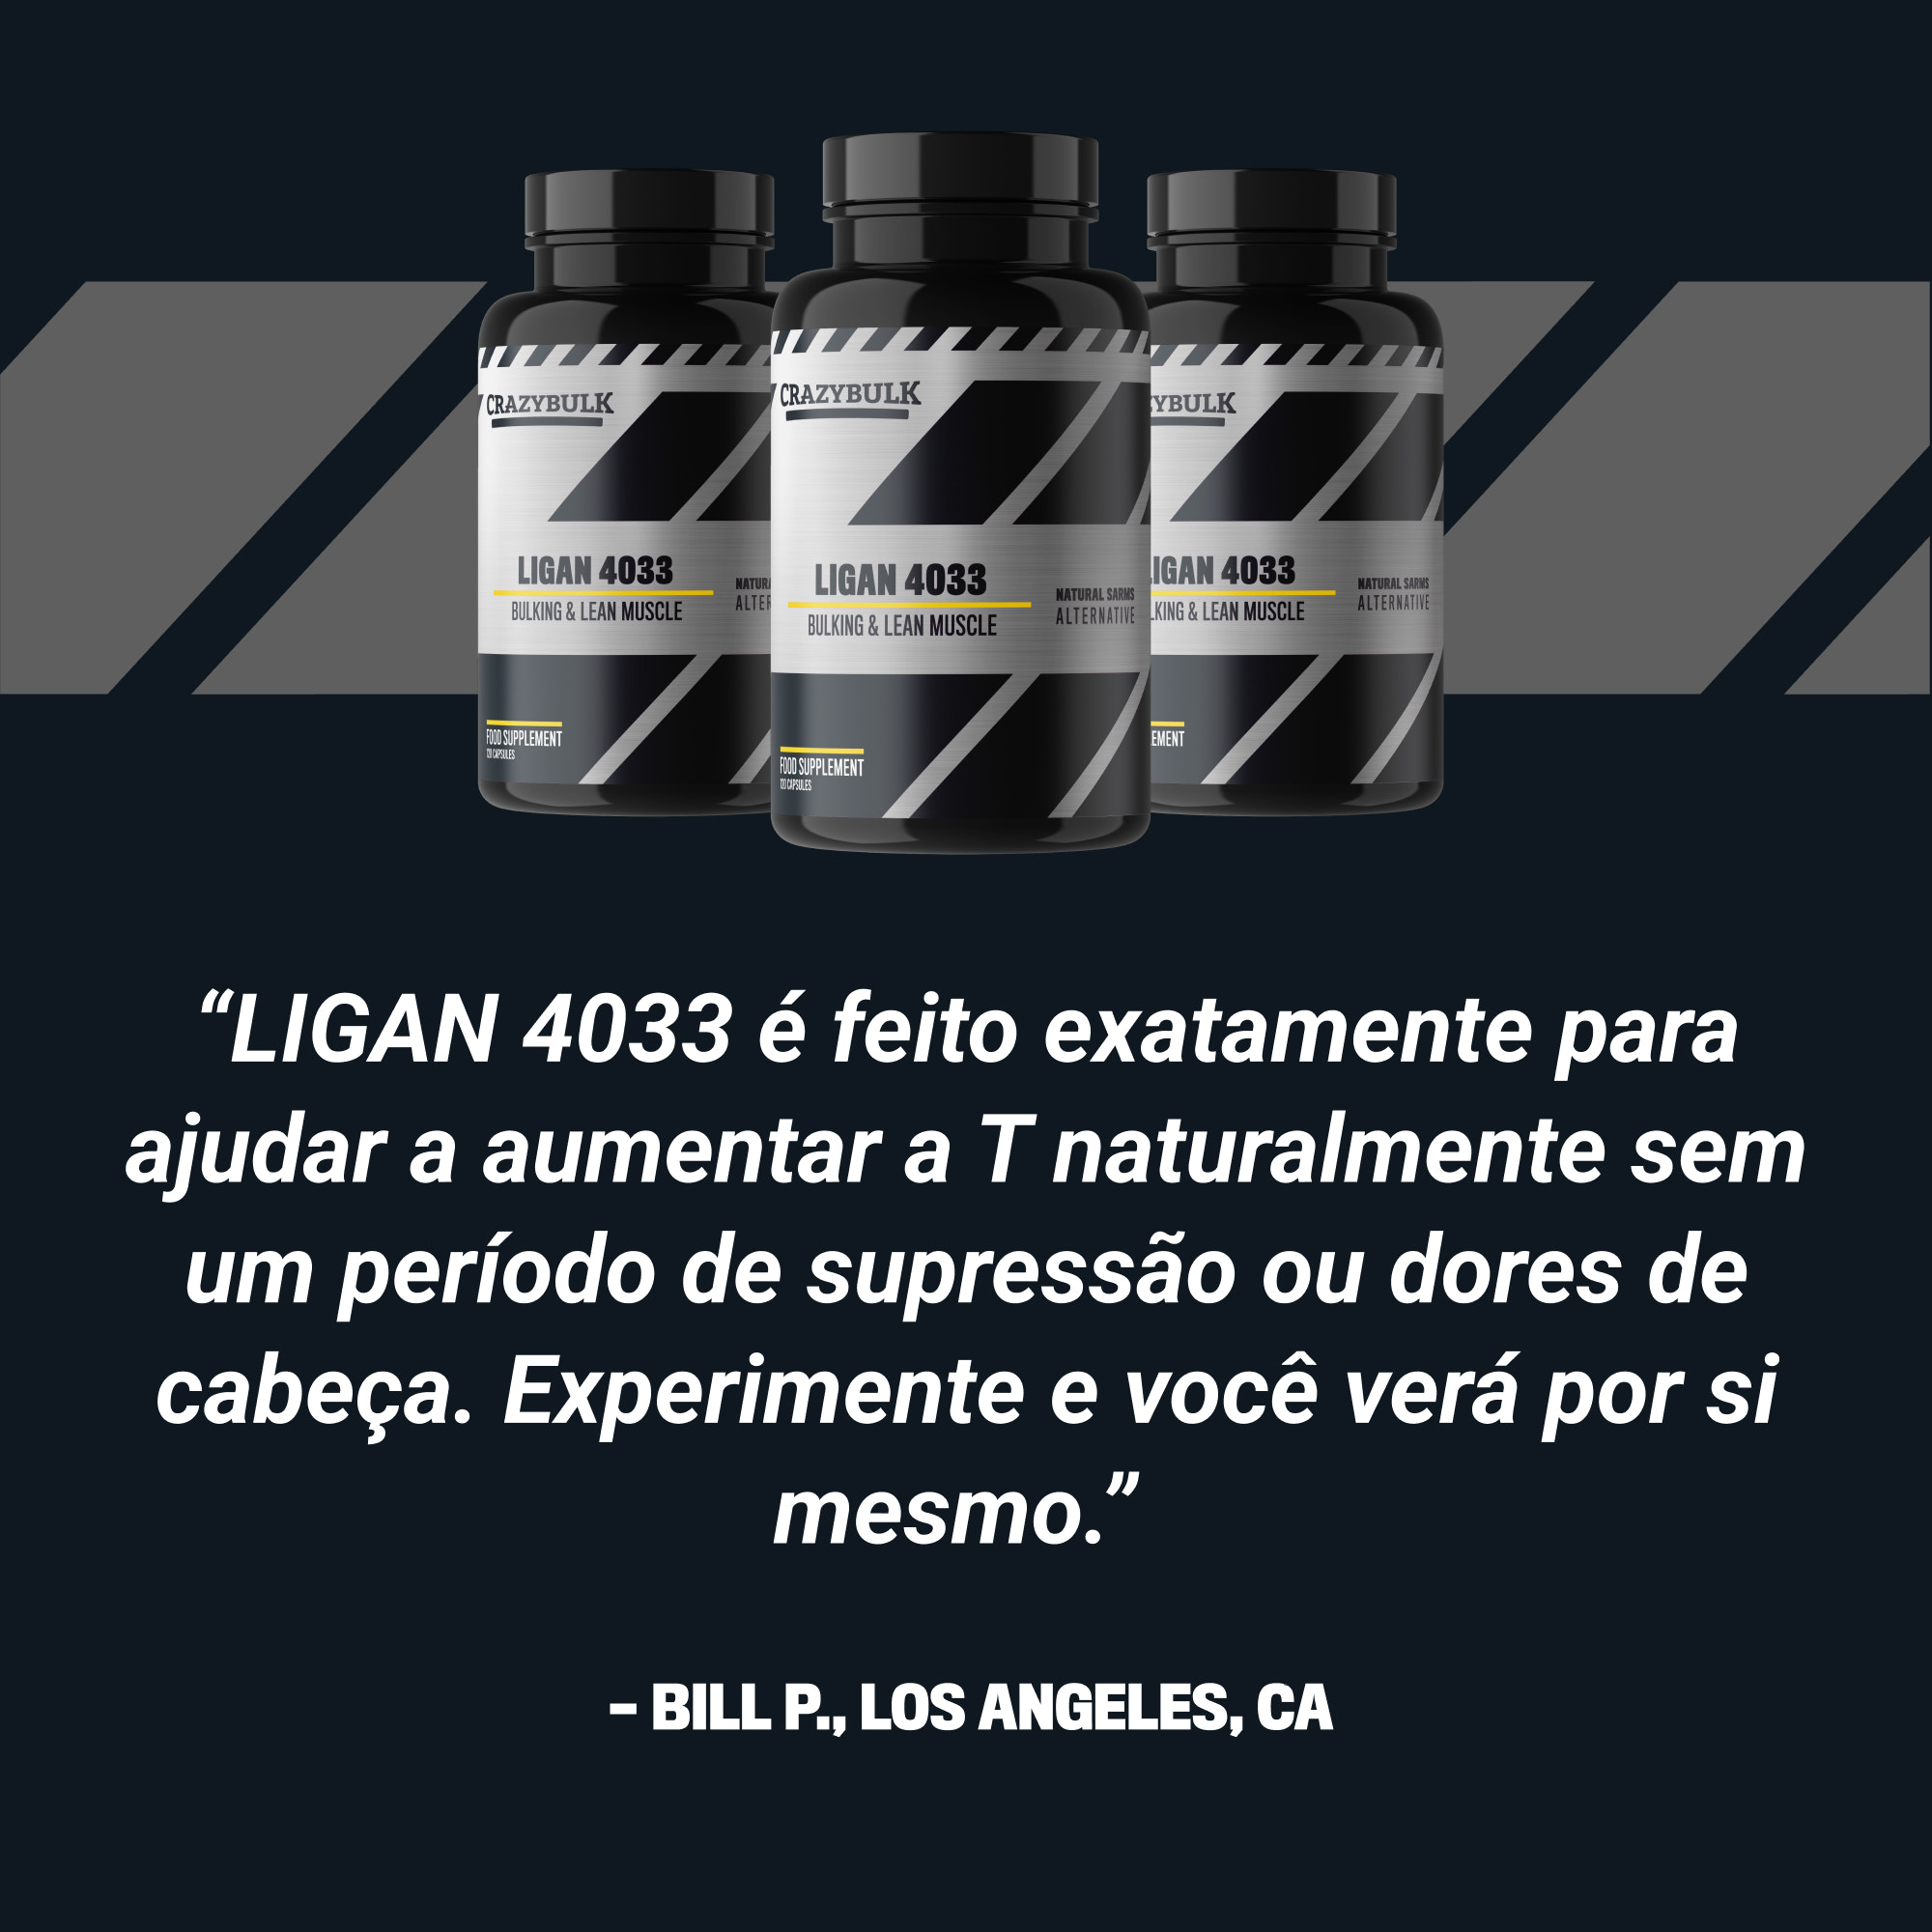 LIGAN 4033